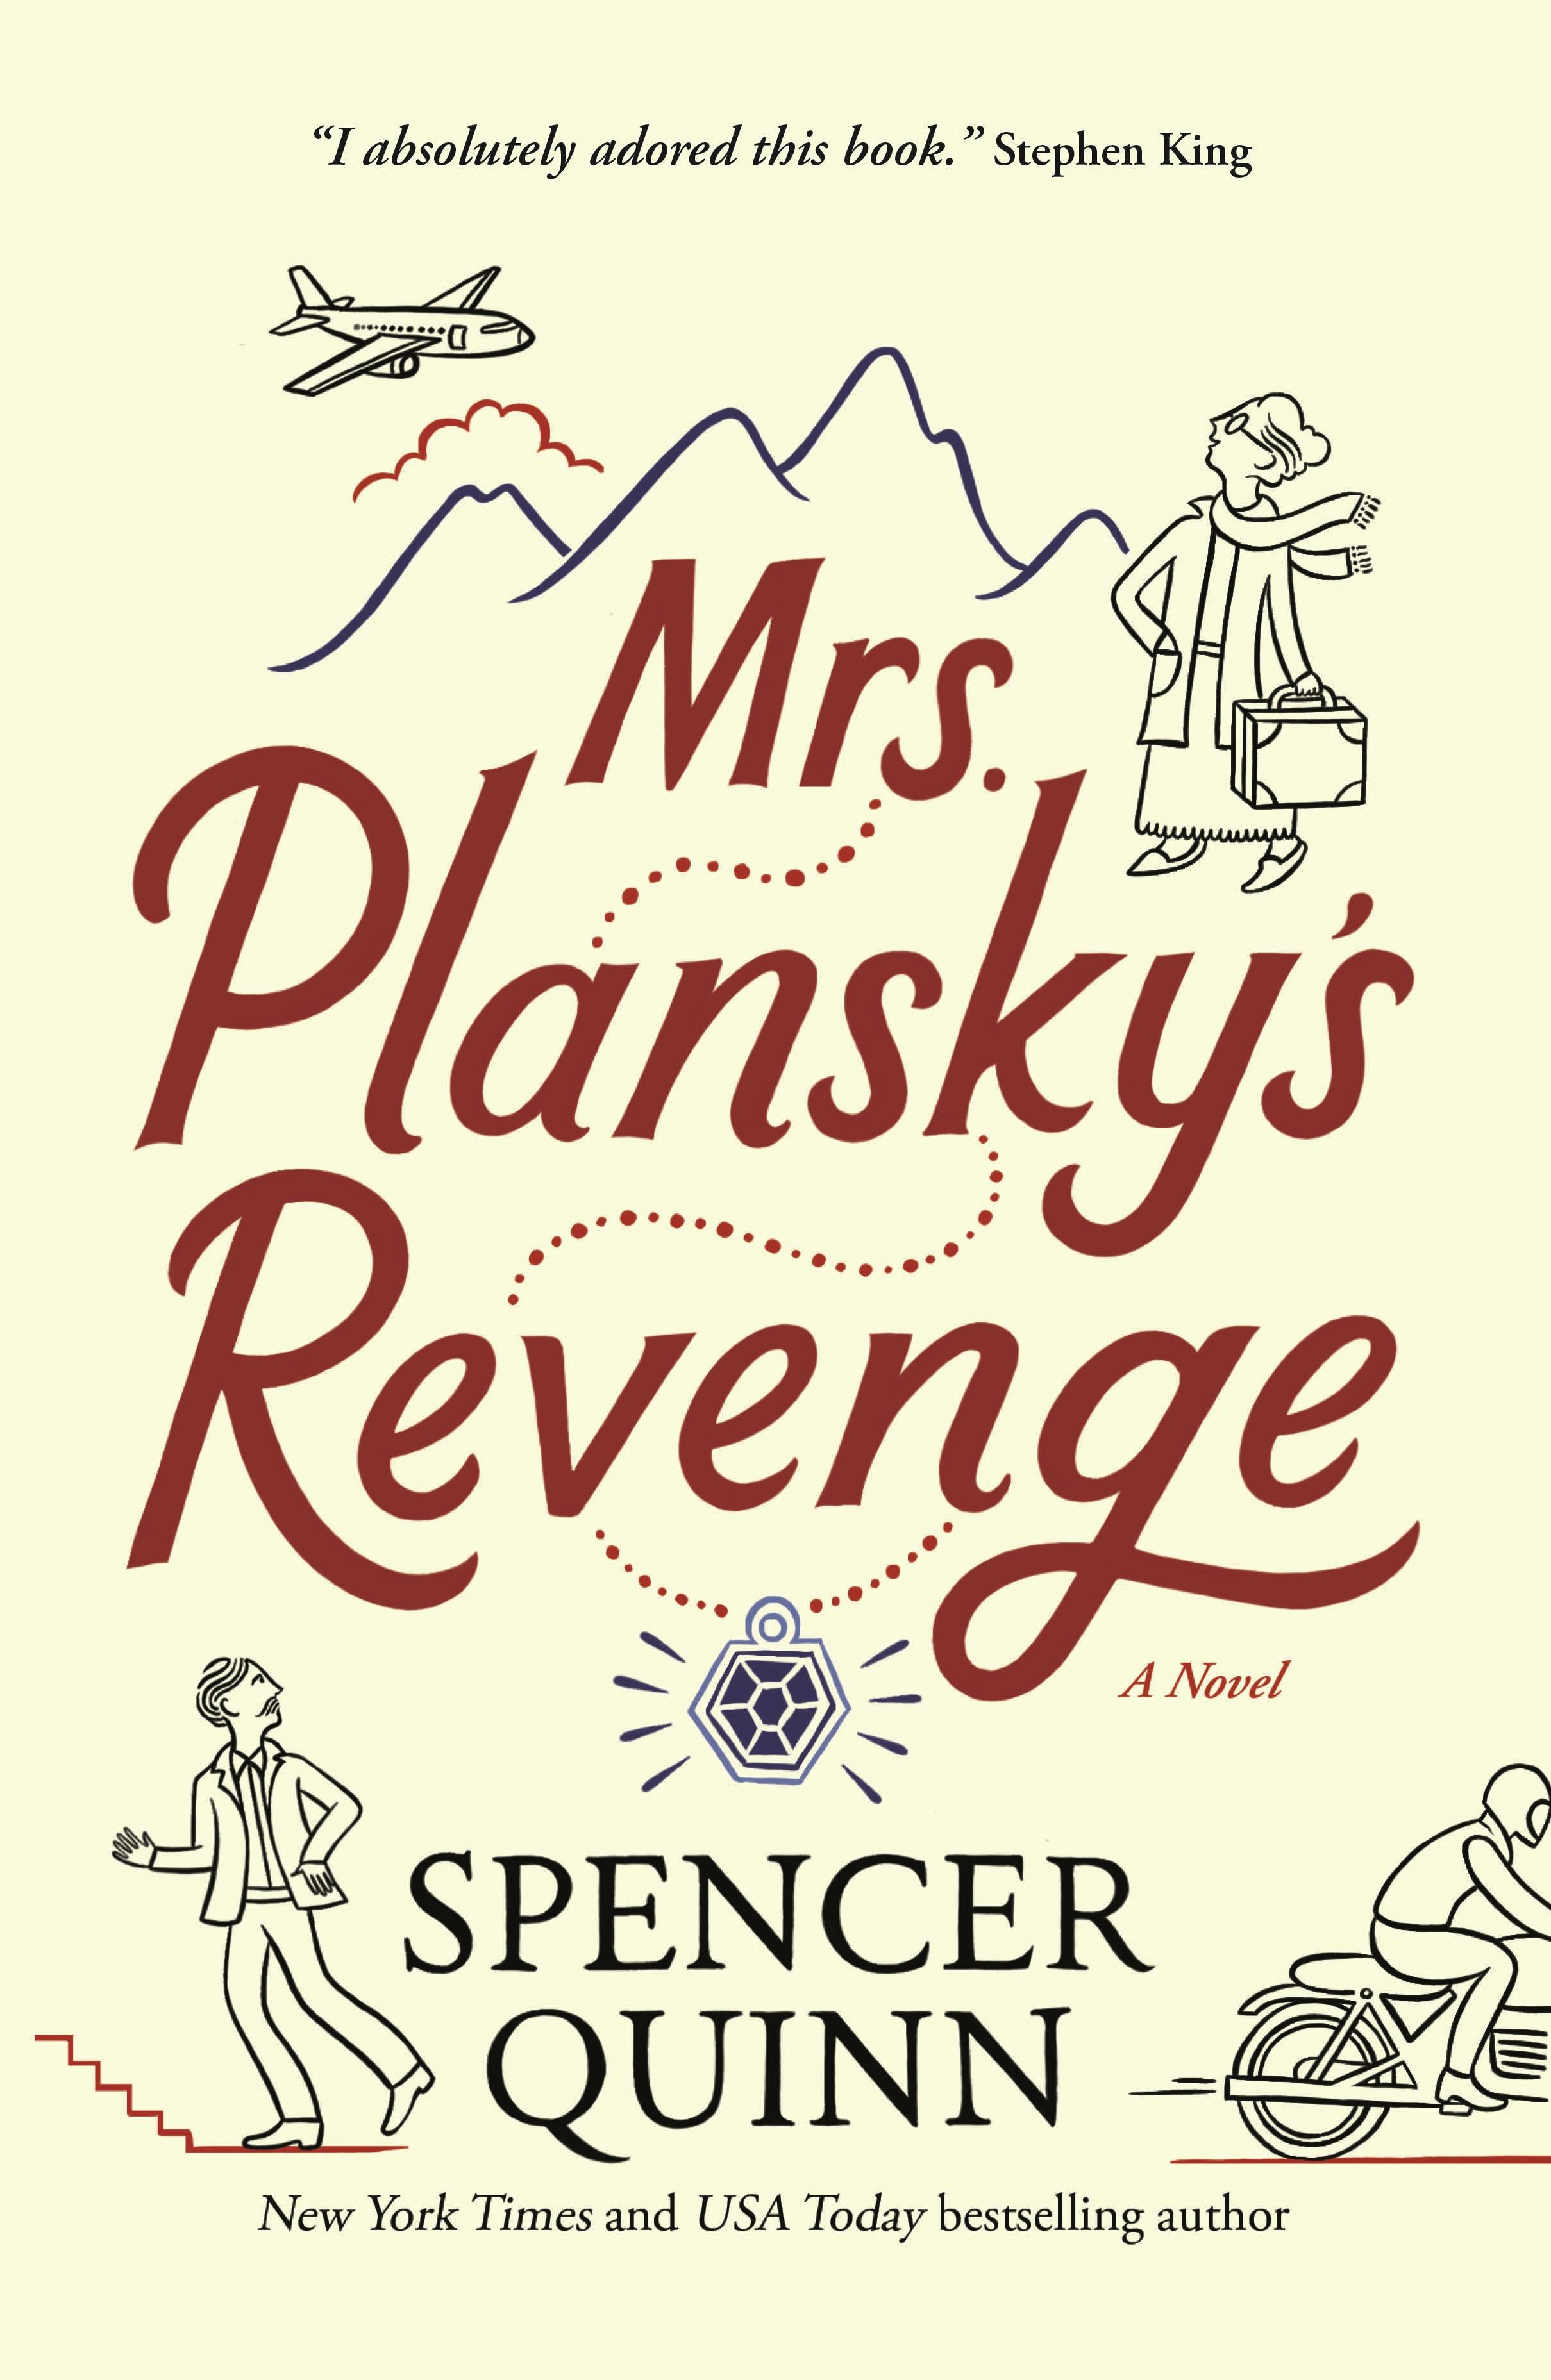 Cover for the book titled as: Mrs. Plansky's Revenge